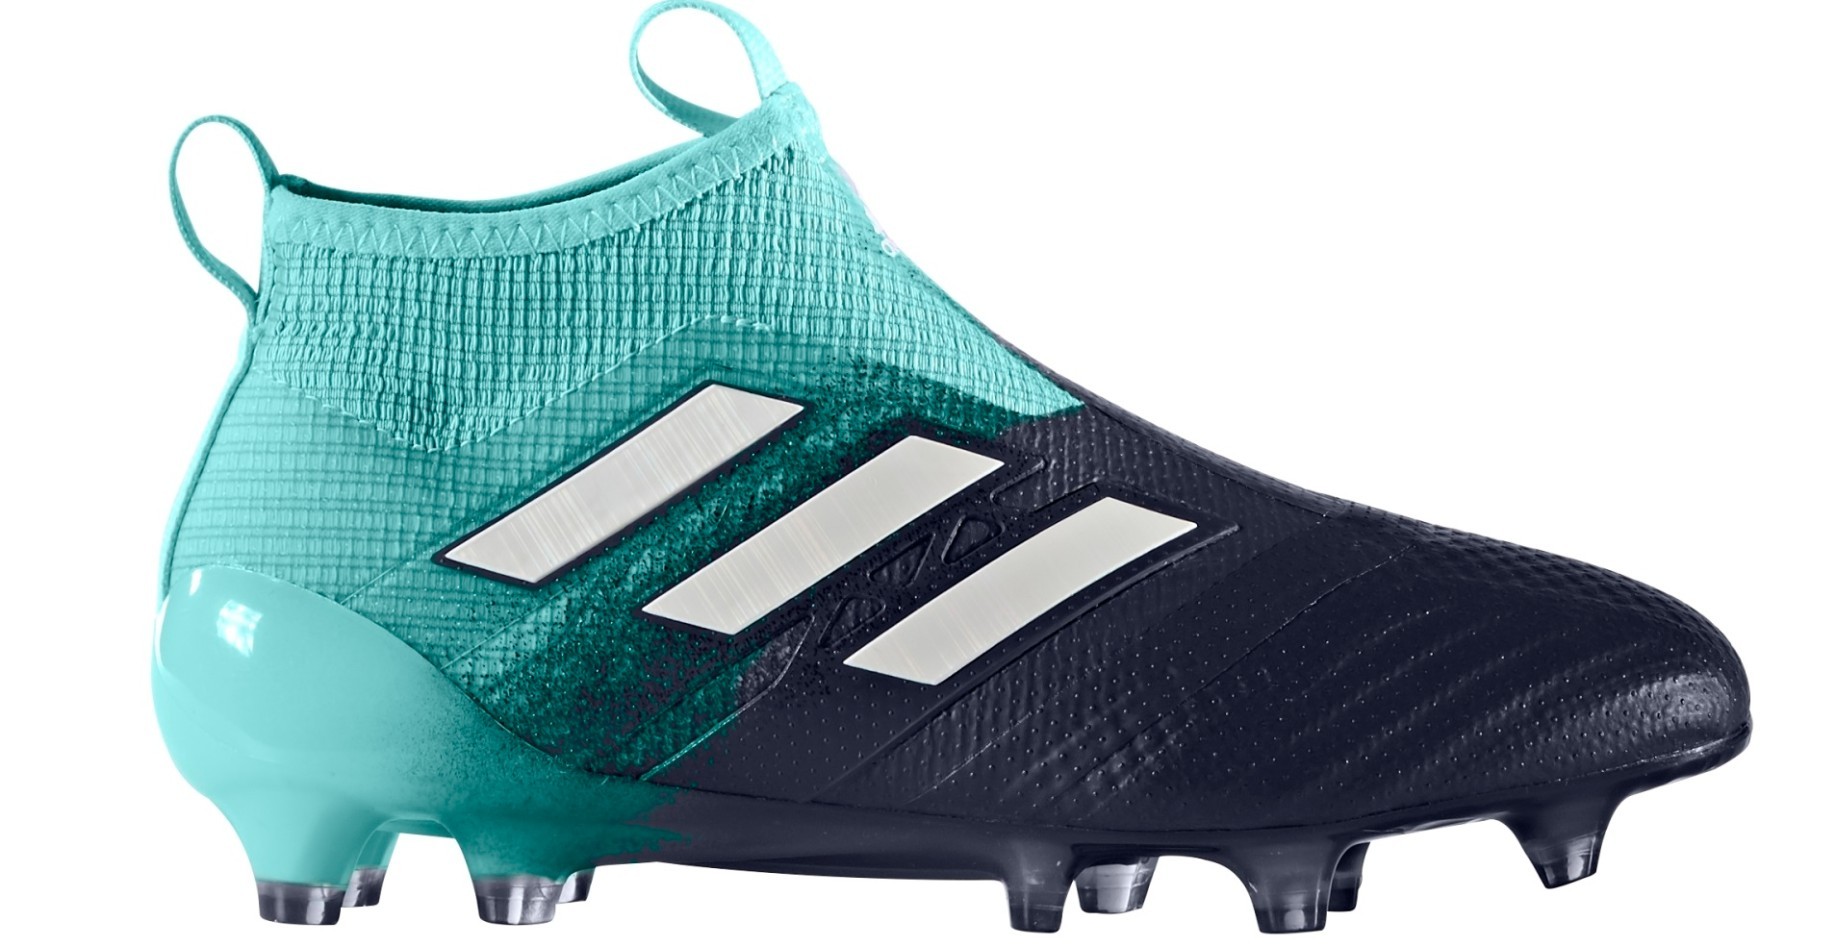 immagini scarpe da calcio adidas